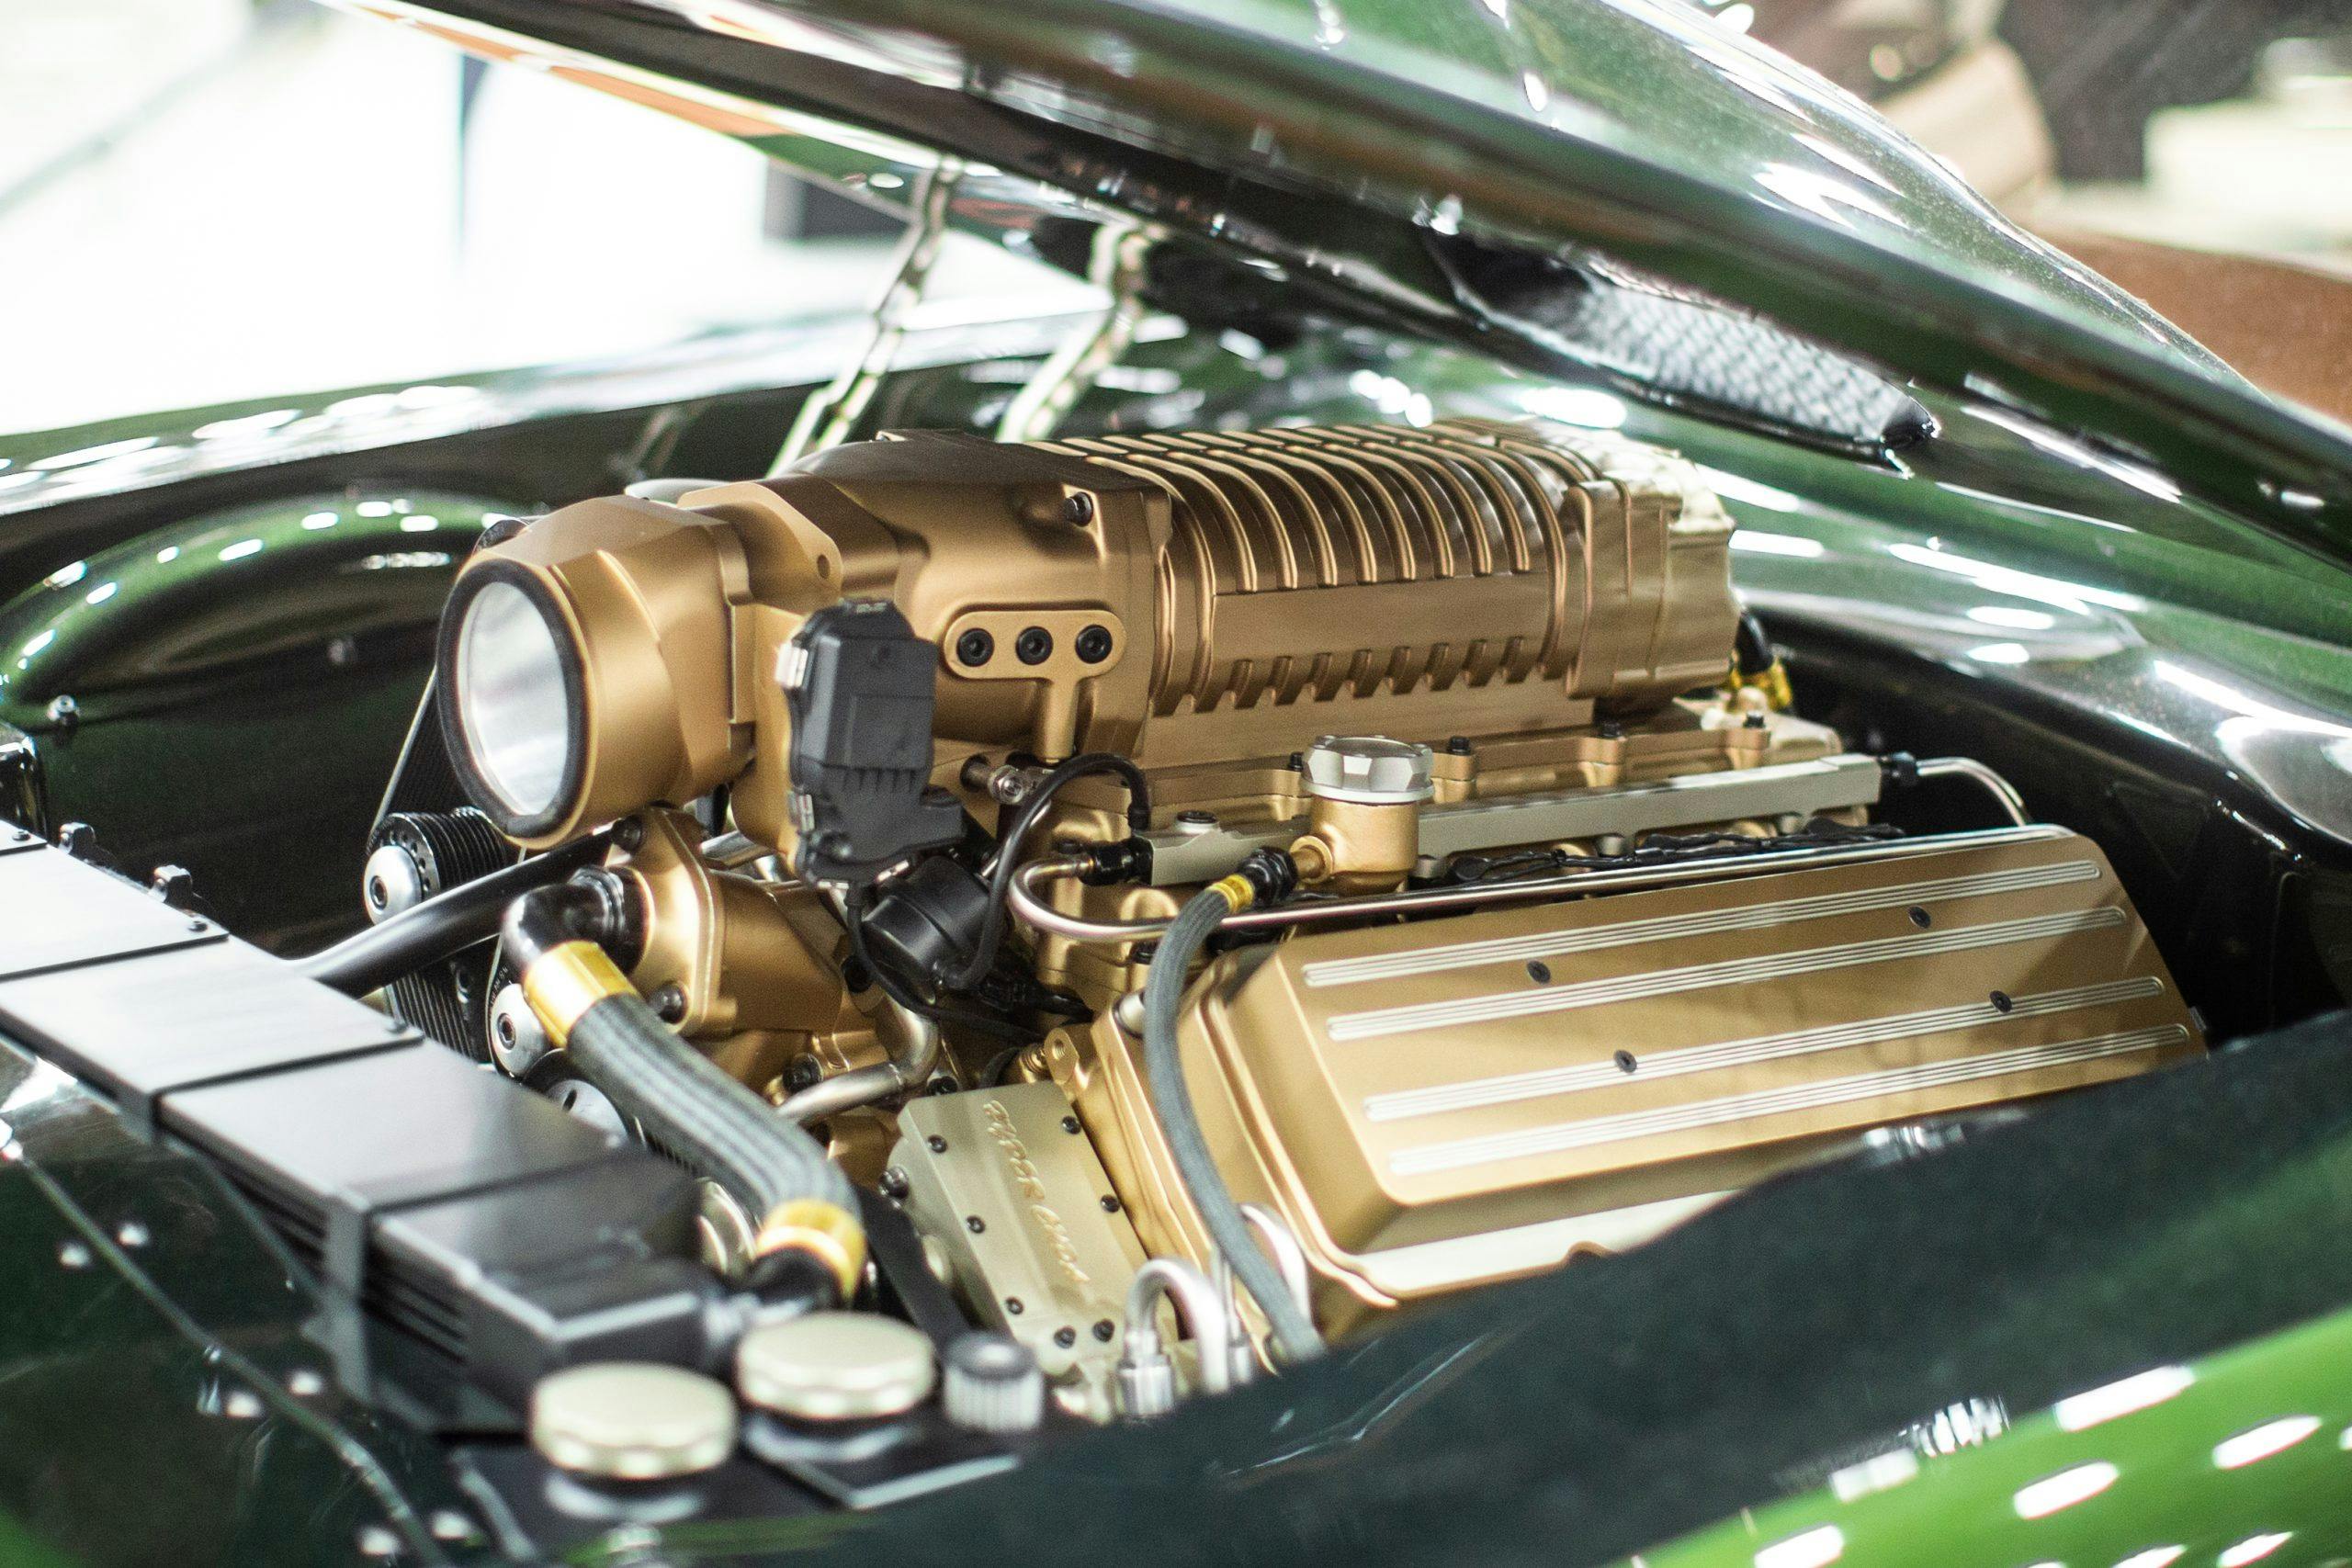 1970 “Hyper Cuda” Plymouth Barracuda engine